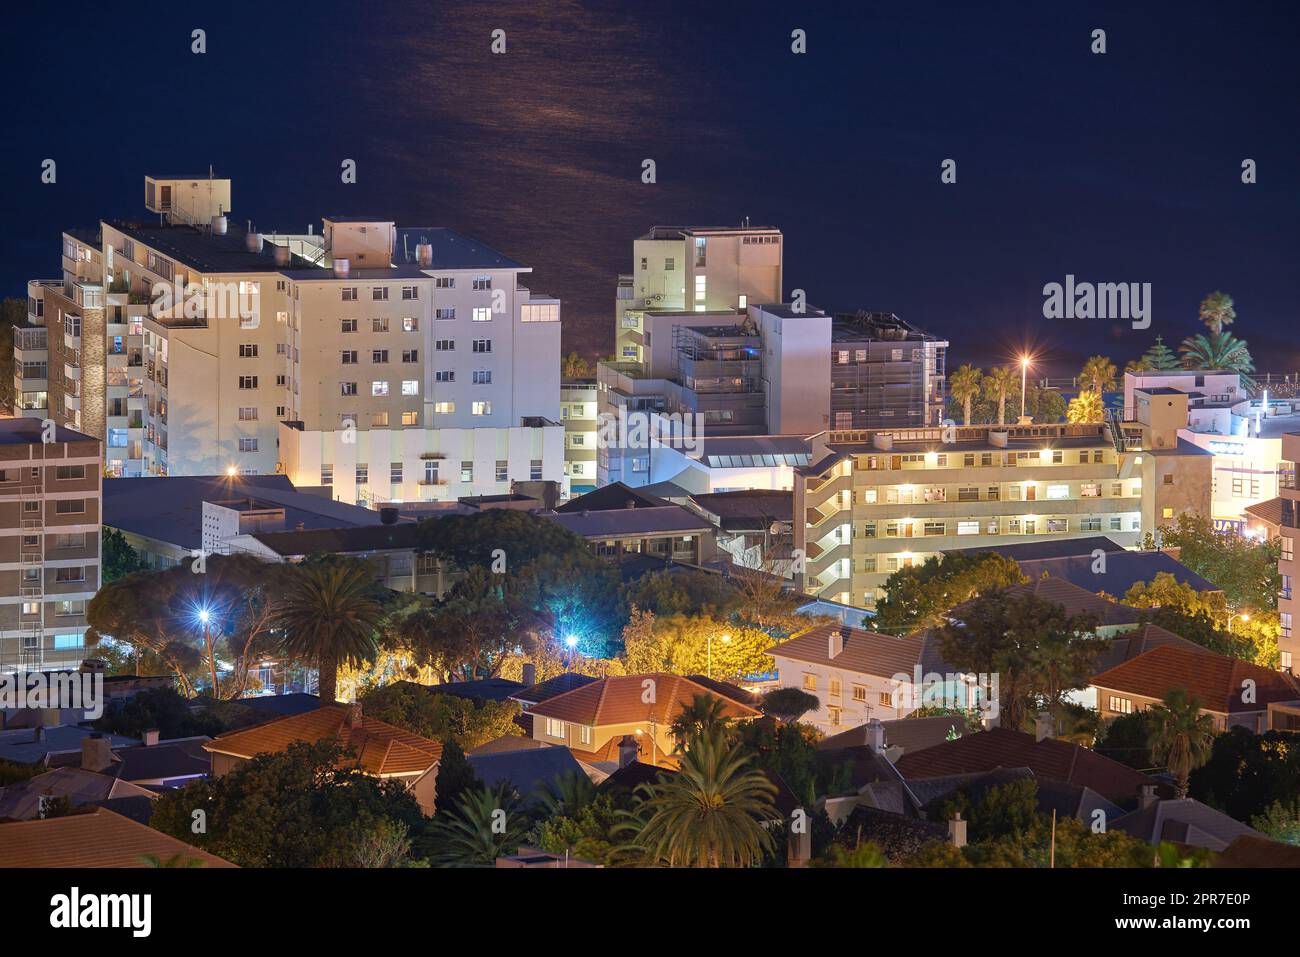 Vue nocturne sur les bâtiments de la ville avec éclairage électrique, infrastructure et fond de mer ou d'océan à l'étranger destination de voyage. Cape Town, centre-ville d'Afrique du Sud et architecture urbaine Banque D'Images